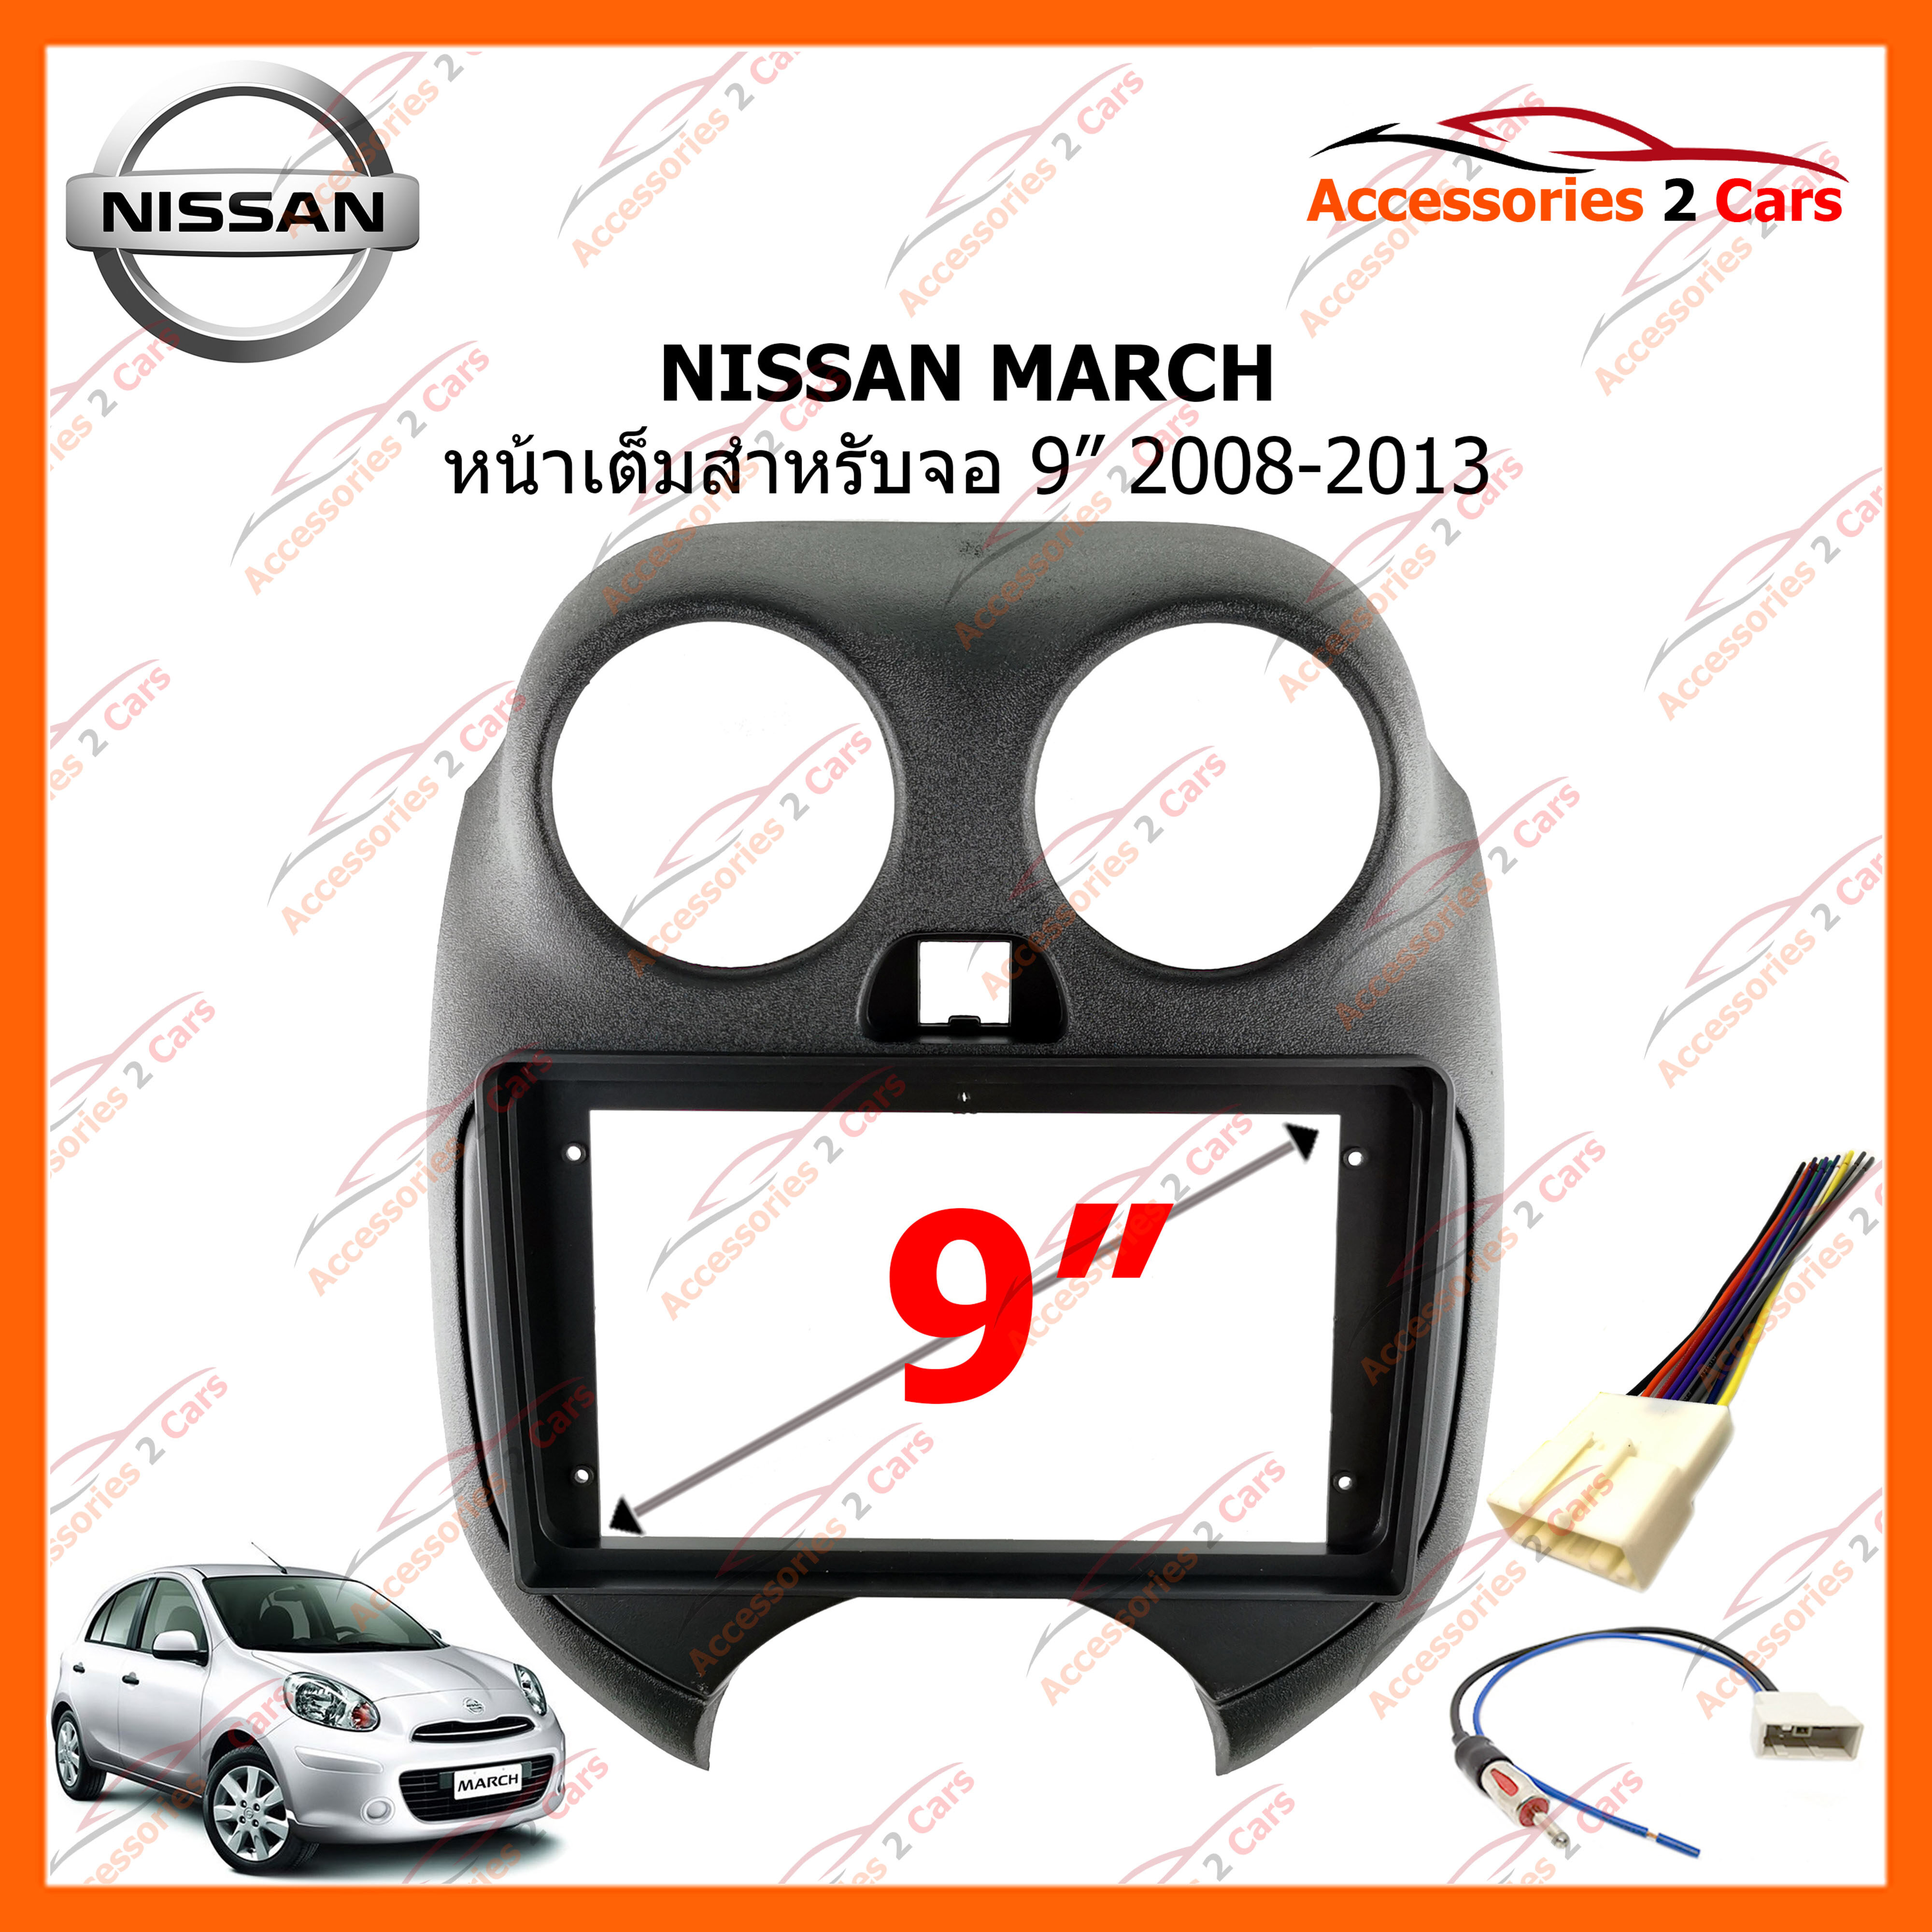 หน้ากากวิทยุรถยนต์ NISSAN MARCH 2008-2013 สำหรับจอ 9 นิ้ว (NI-051N)